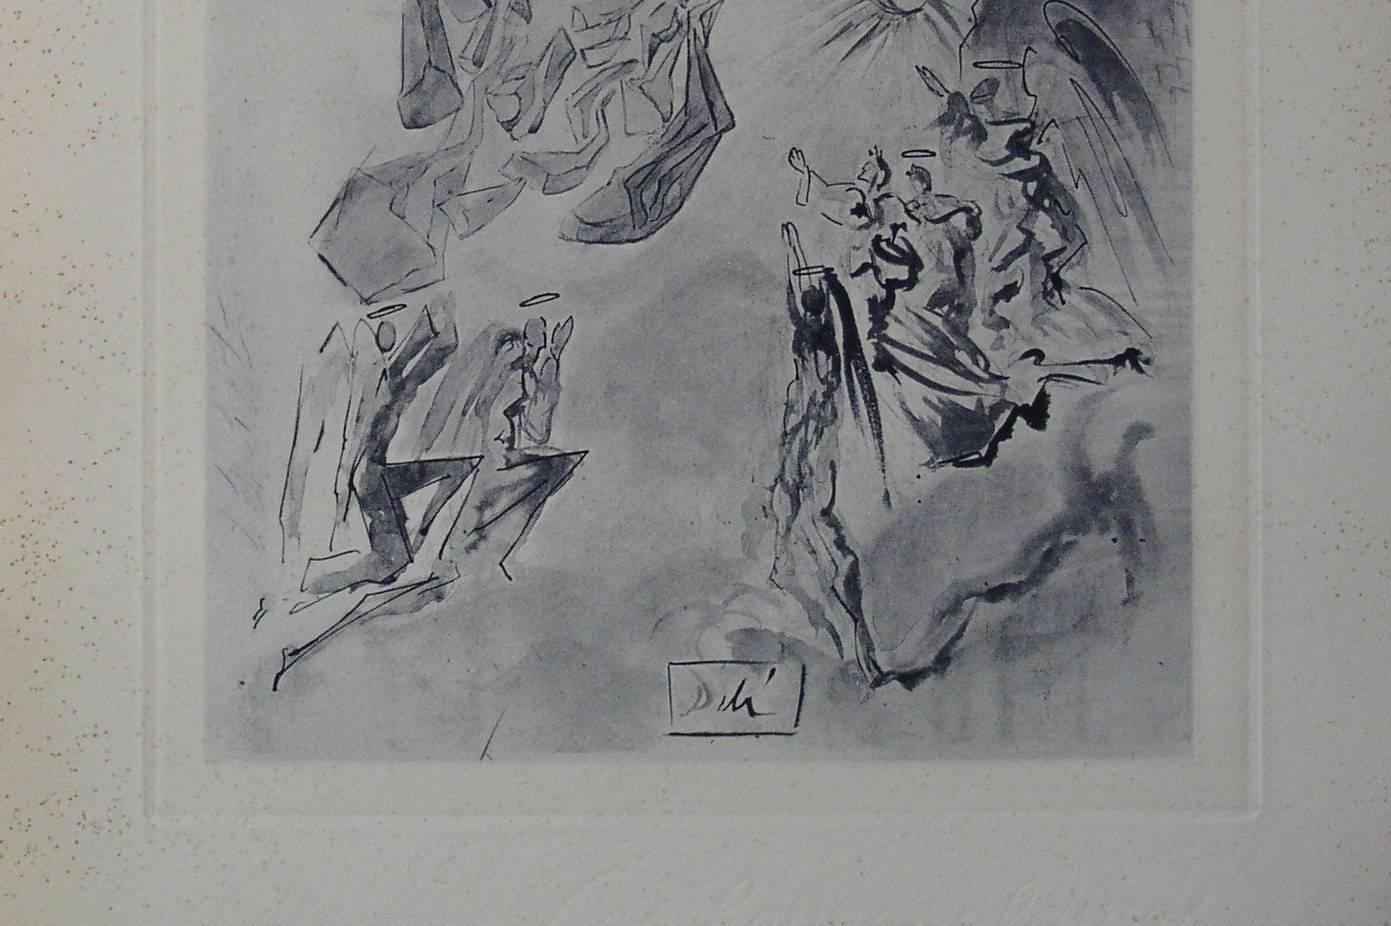 Dante recouvre la vue - Engraving - 150 copies - Print by Salvador Dalí